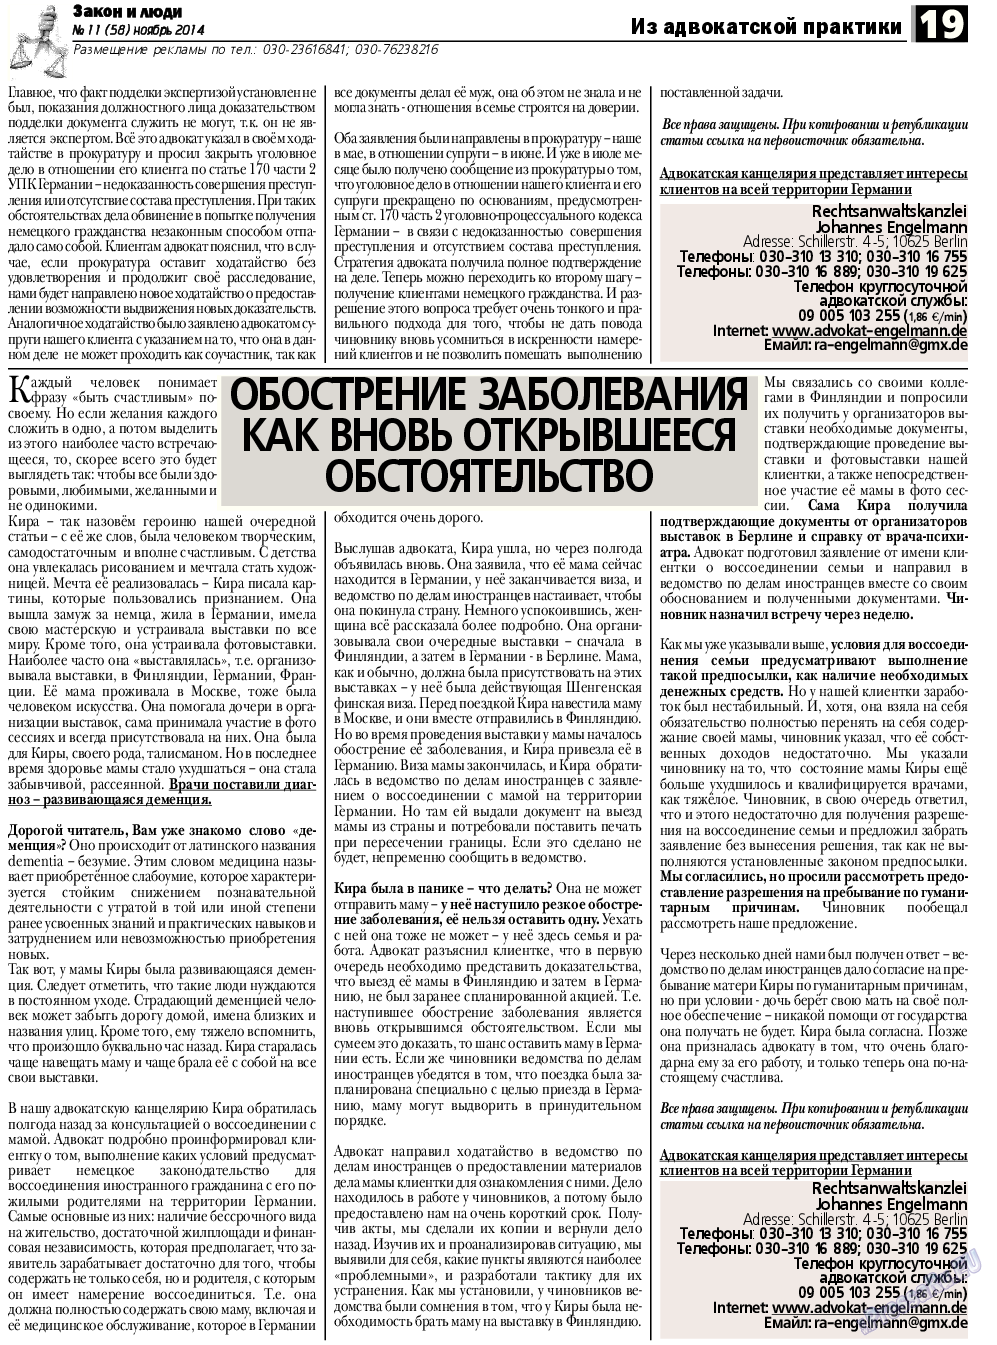 Закон и люди, газета. 2014 №11 стр.19